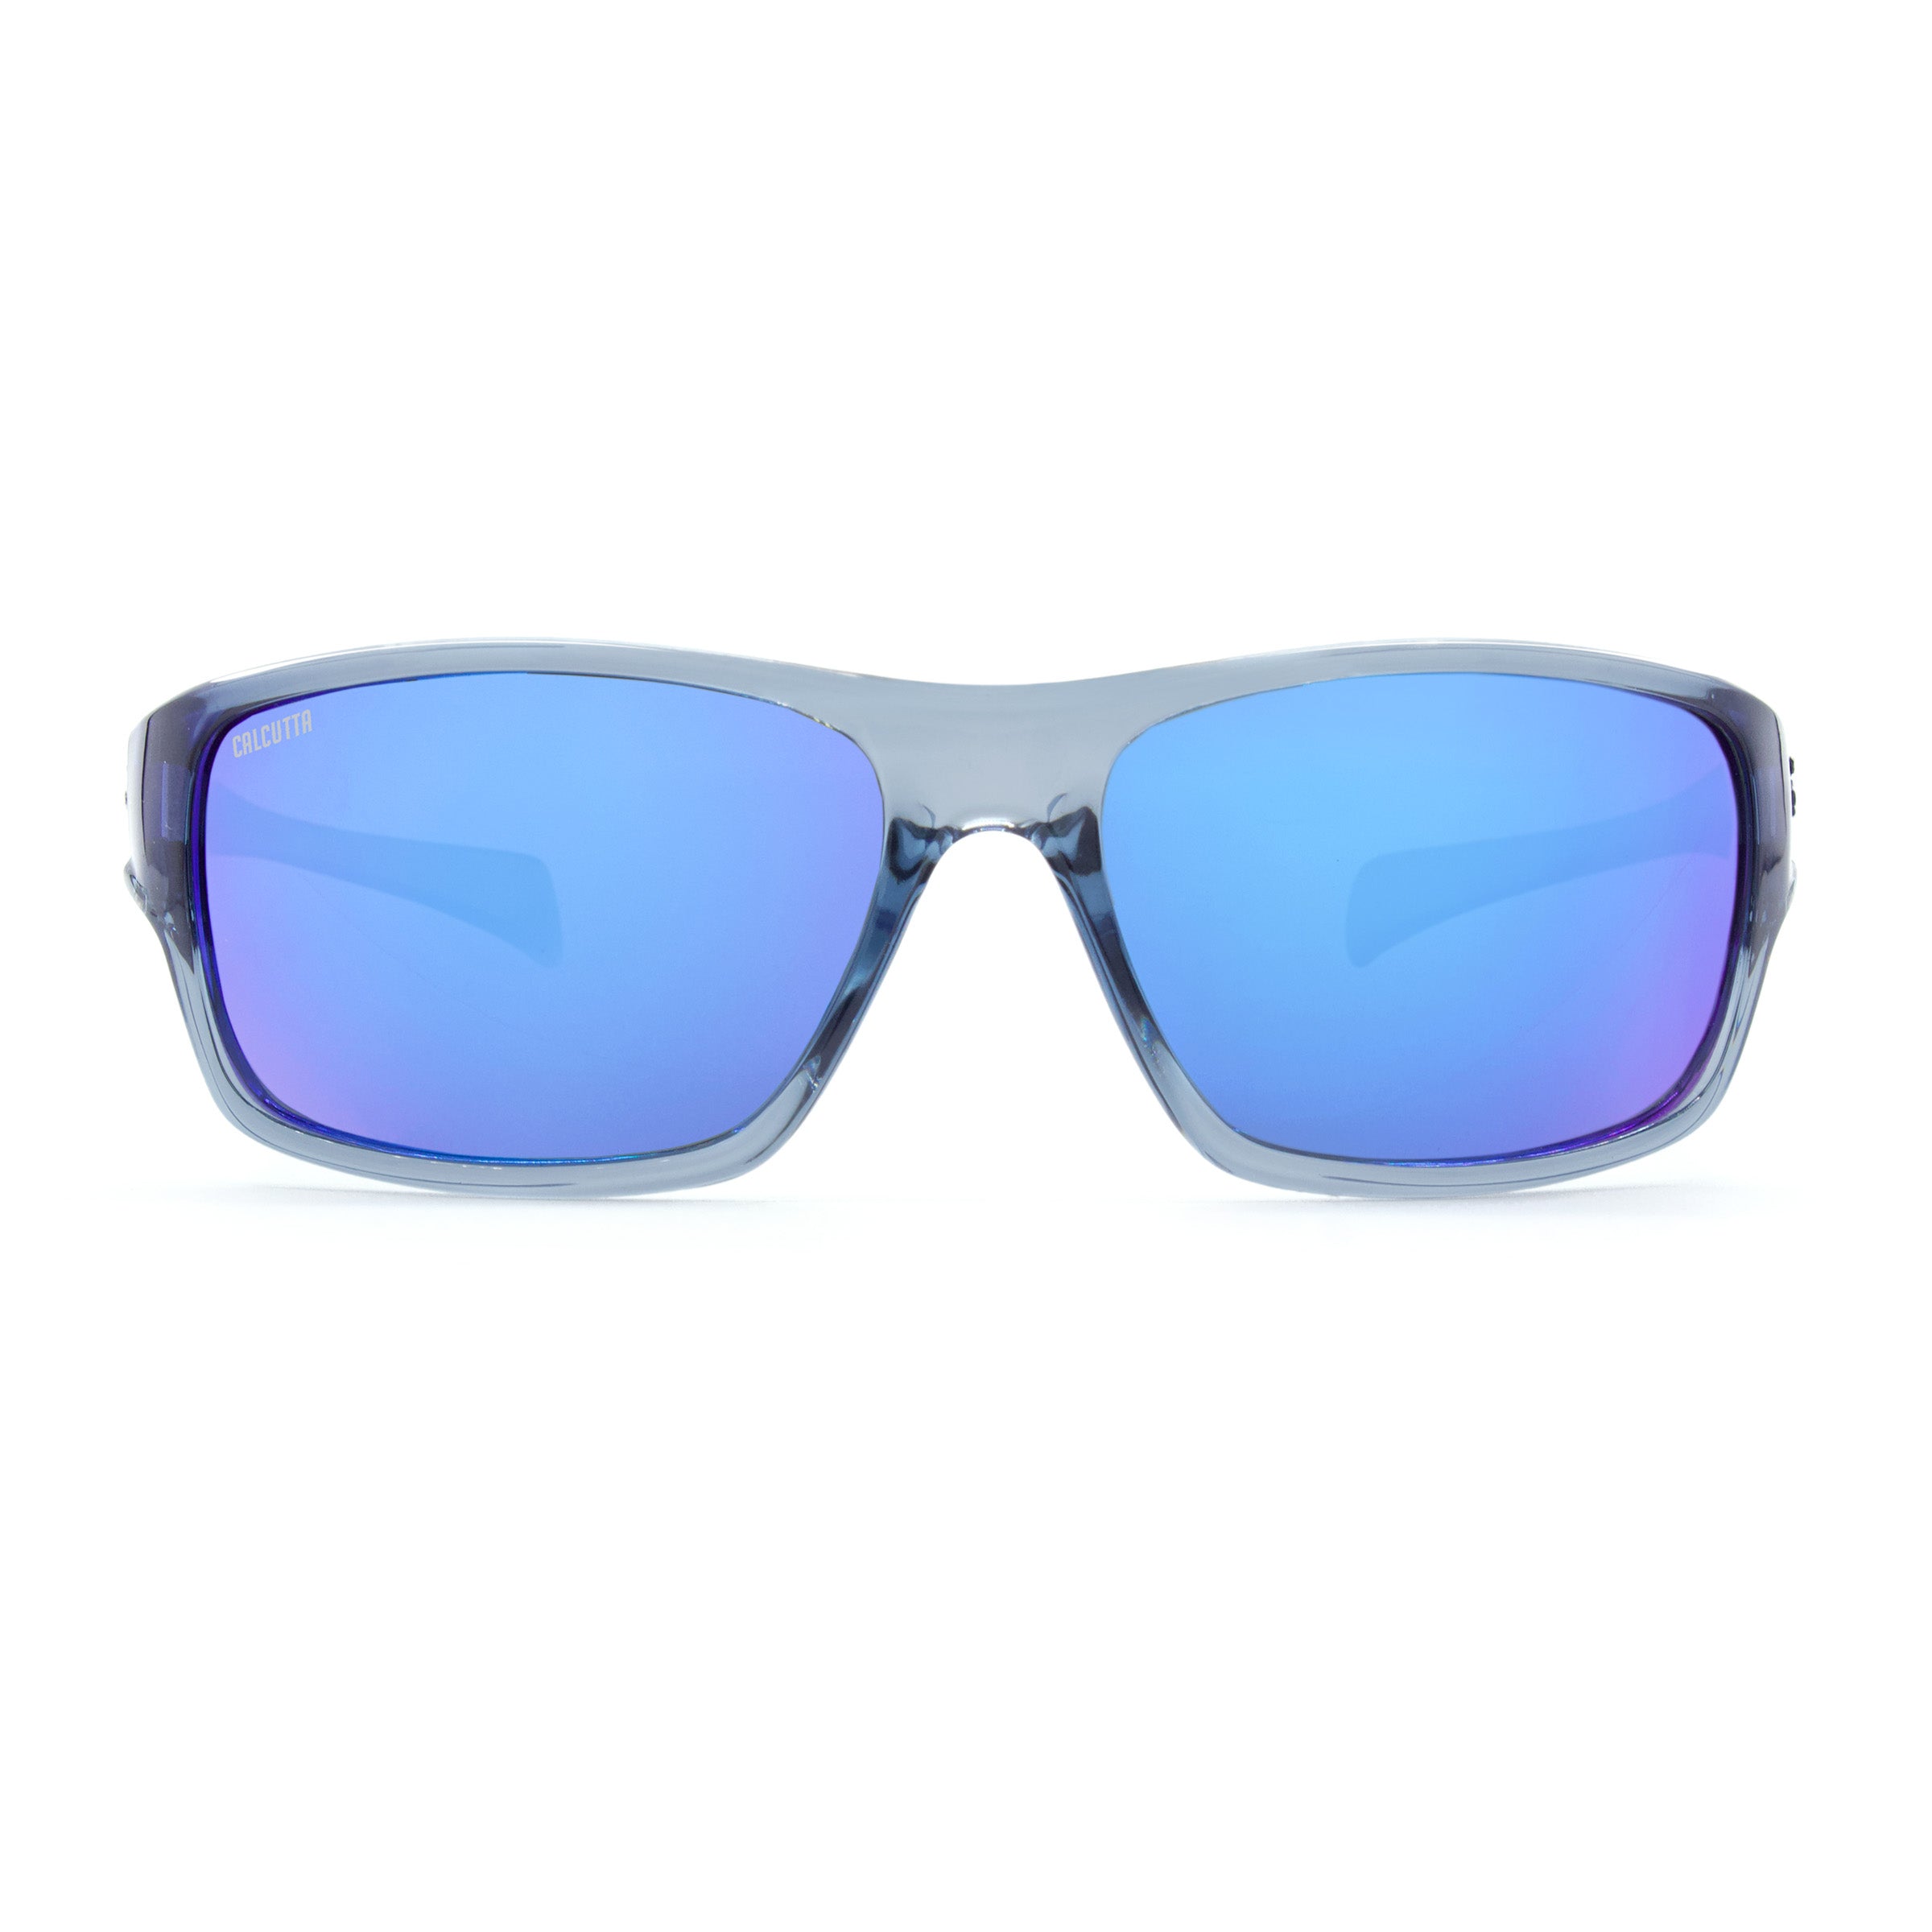 Calcutta Chesapeake sunglasses blue mirror front